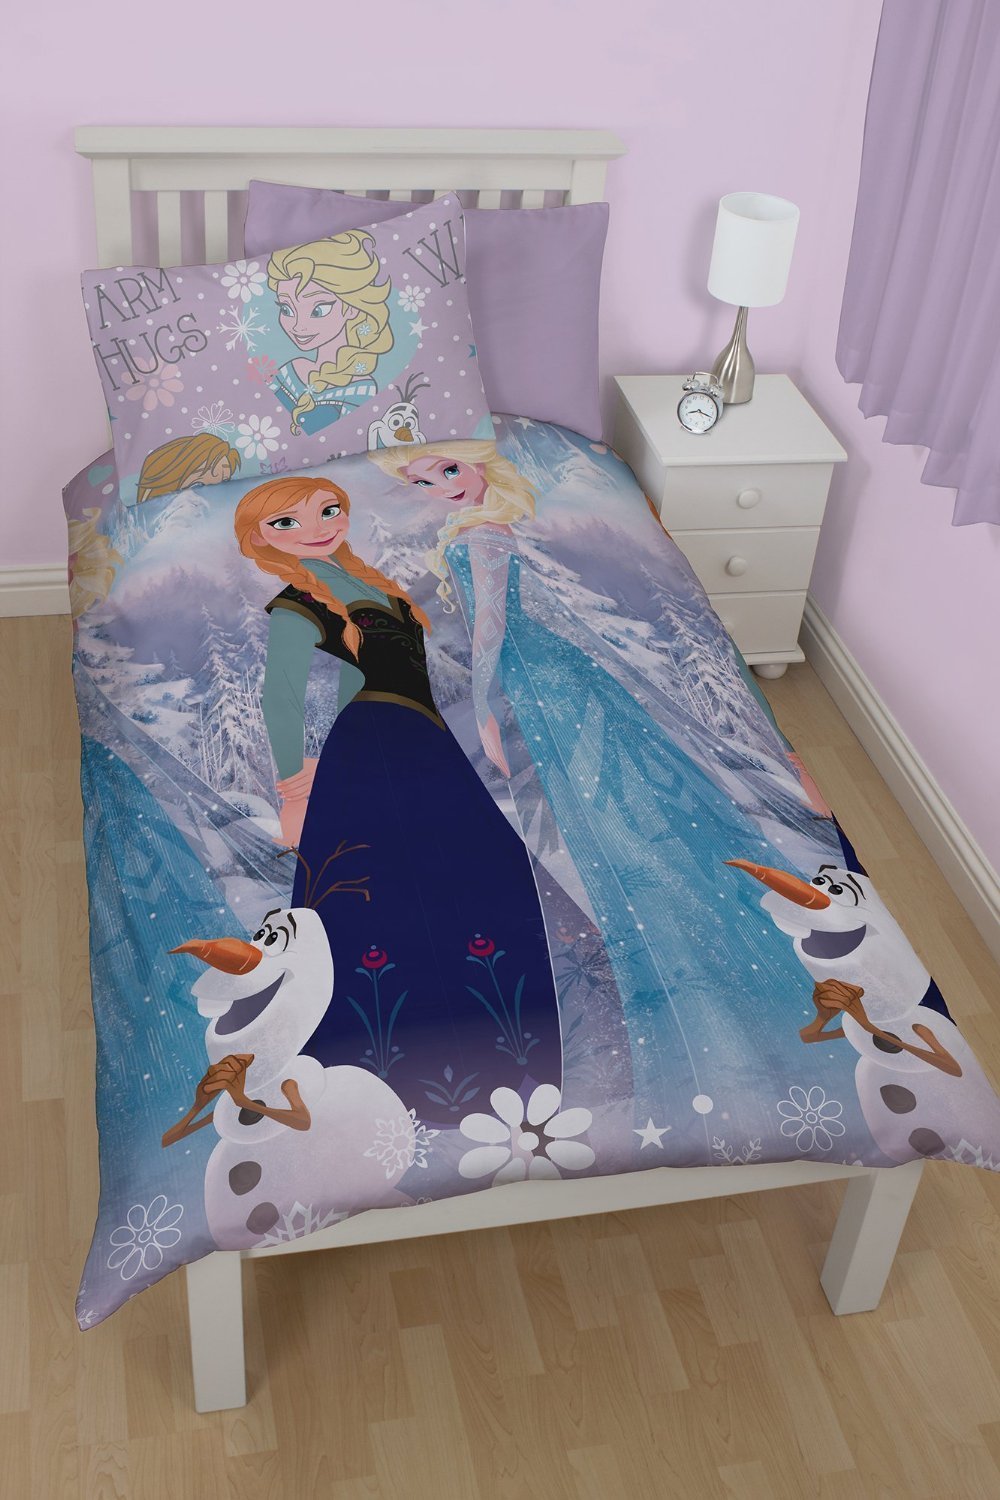 Gearceerd Helderheid optie Koop Disney Frozen - Reversible Bedding - Elsa, Anna and Olaf (206503)